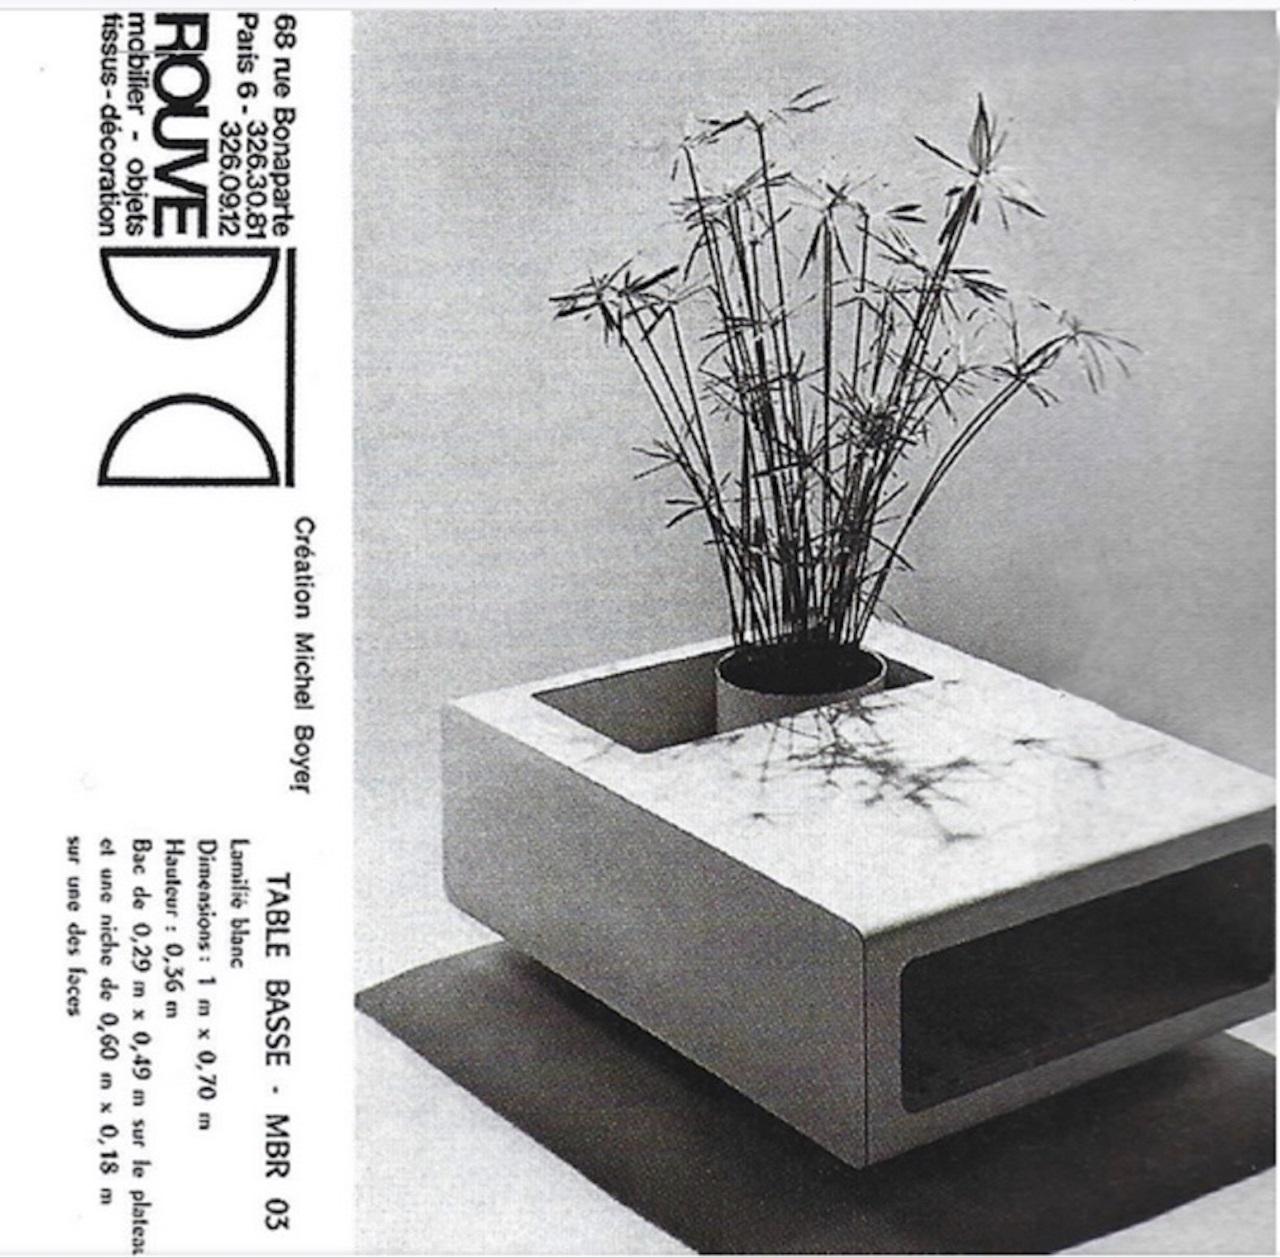 Magnifique table basse de forme sculpturale minimaliste ' MBR 03' conçue en 1968 par le maître designer français Michel Boyer pour Rouve, Paris. Michel Boyer a conçu une petite série de tables 